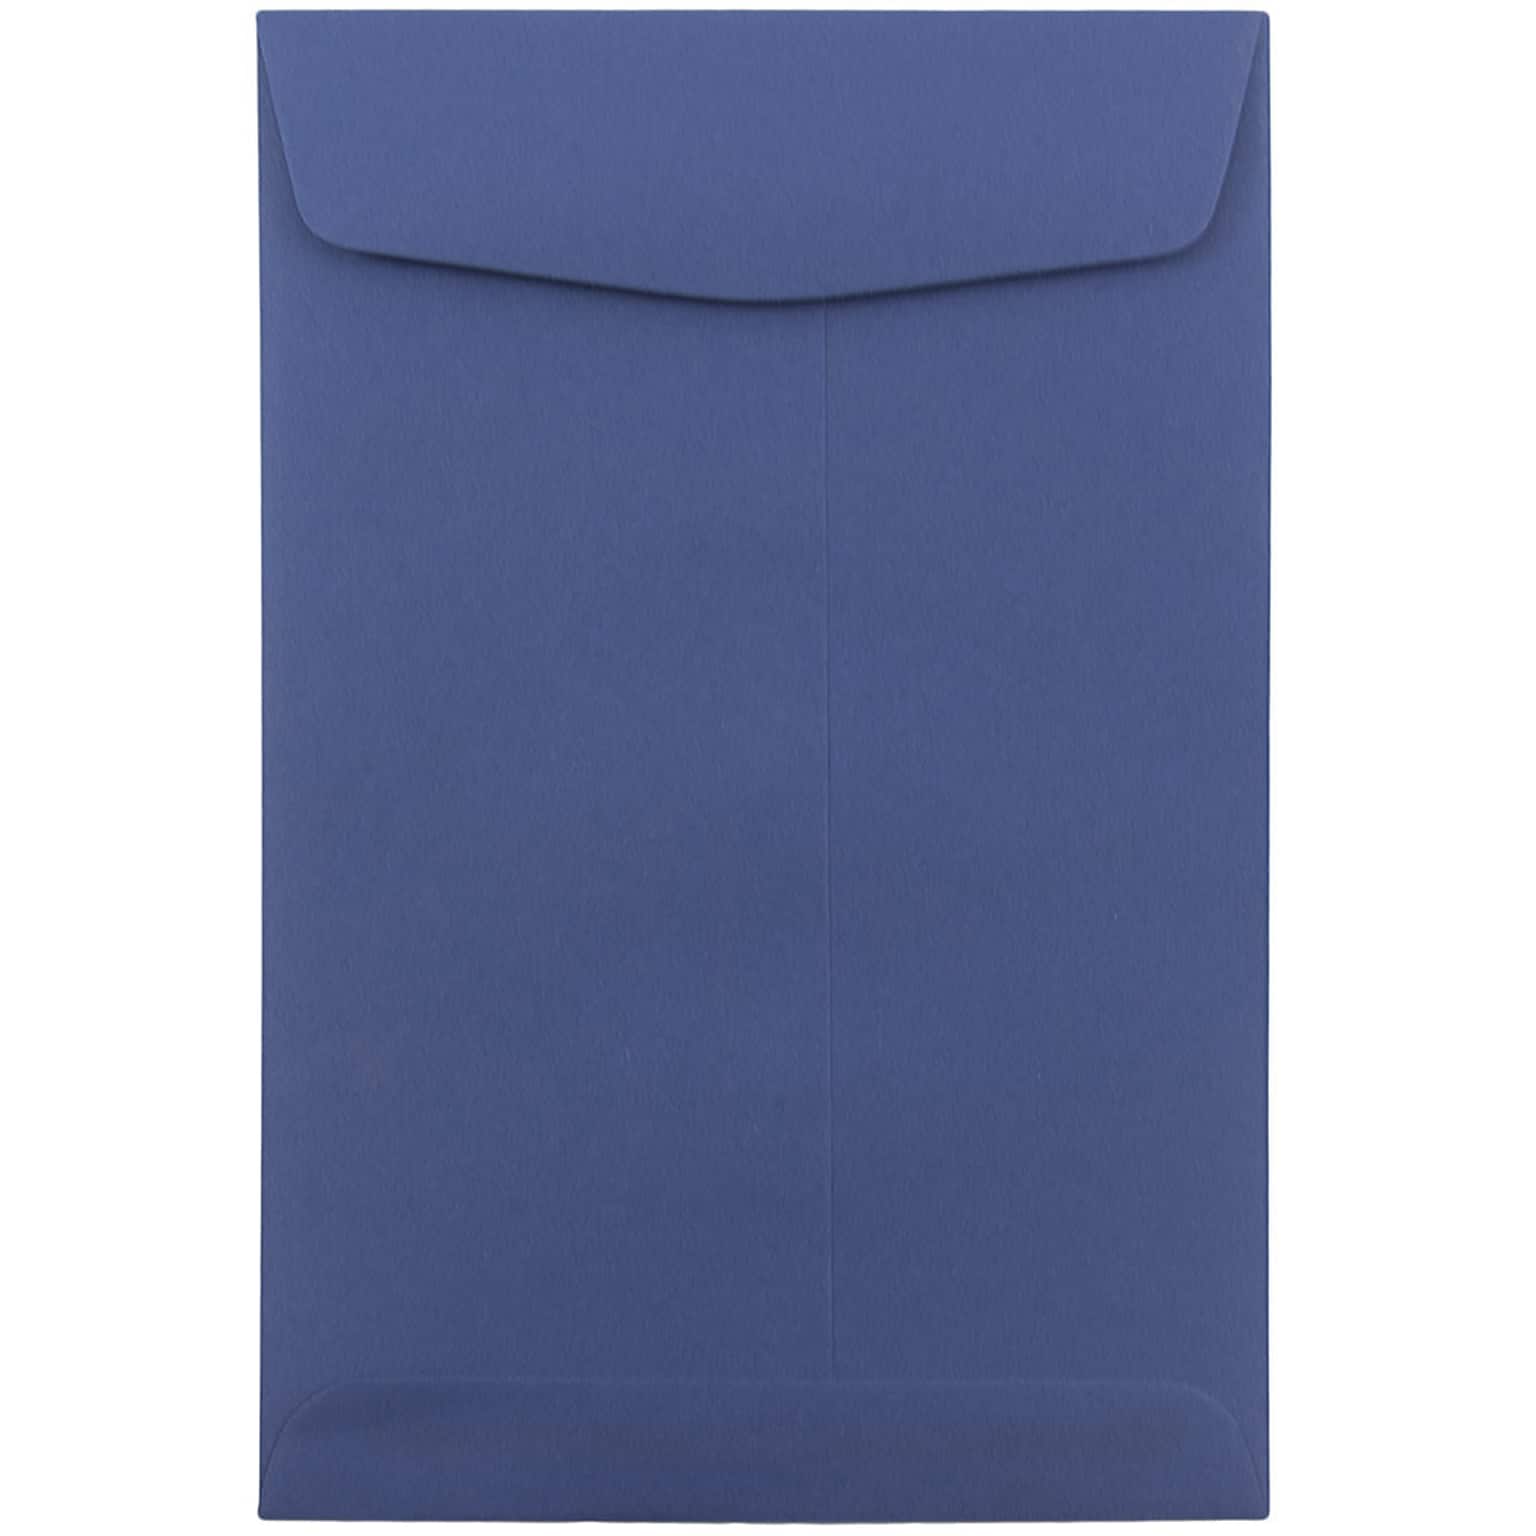 JAM Paper 6 x 9 Open End Catalog Envelopes, Presidential Blue, 10/Pack (363913003C)